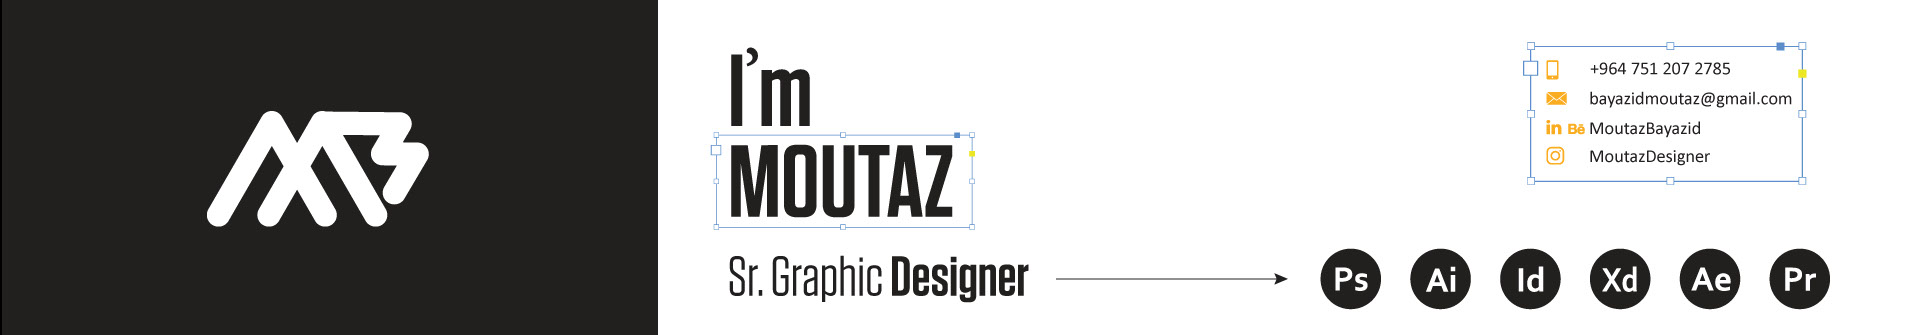 Profil-Banner von Moutaz Bayazid